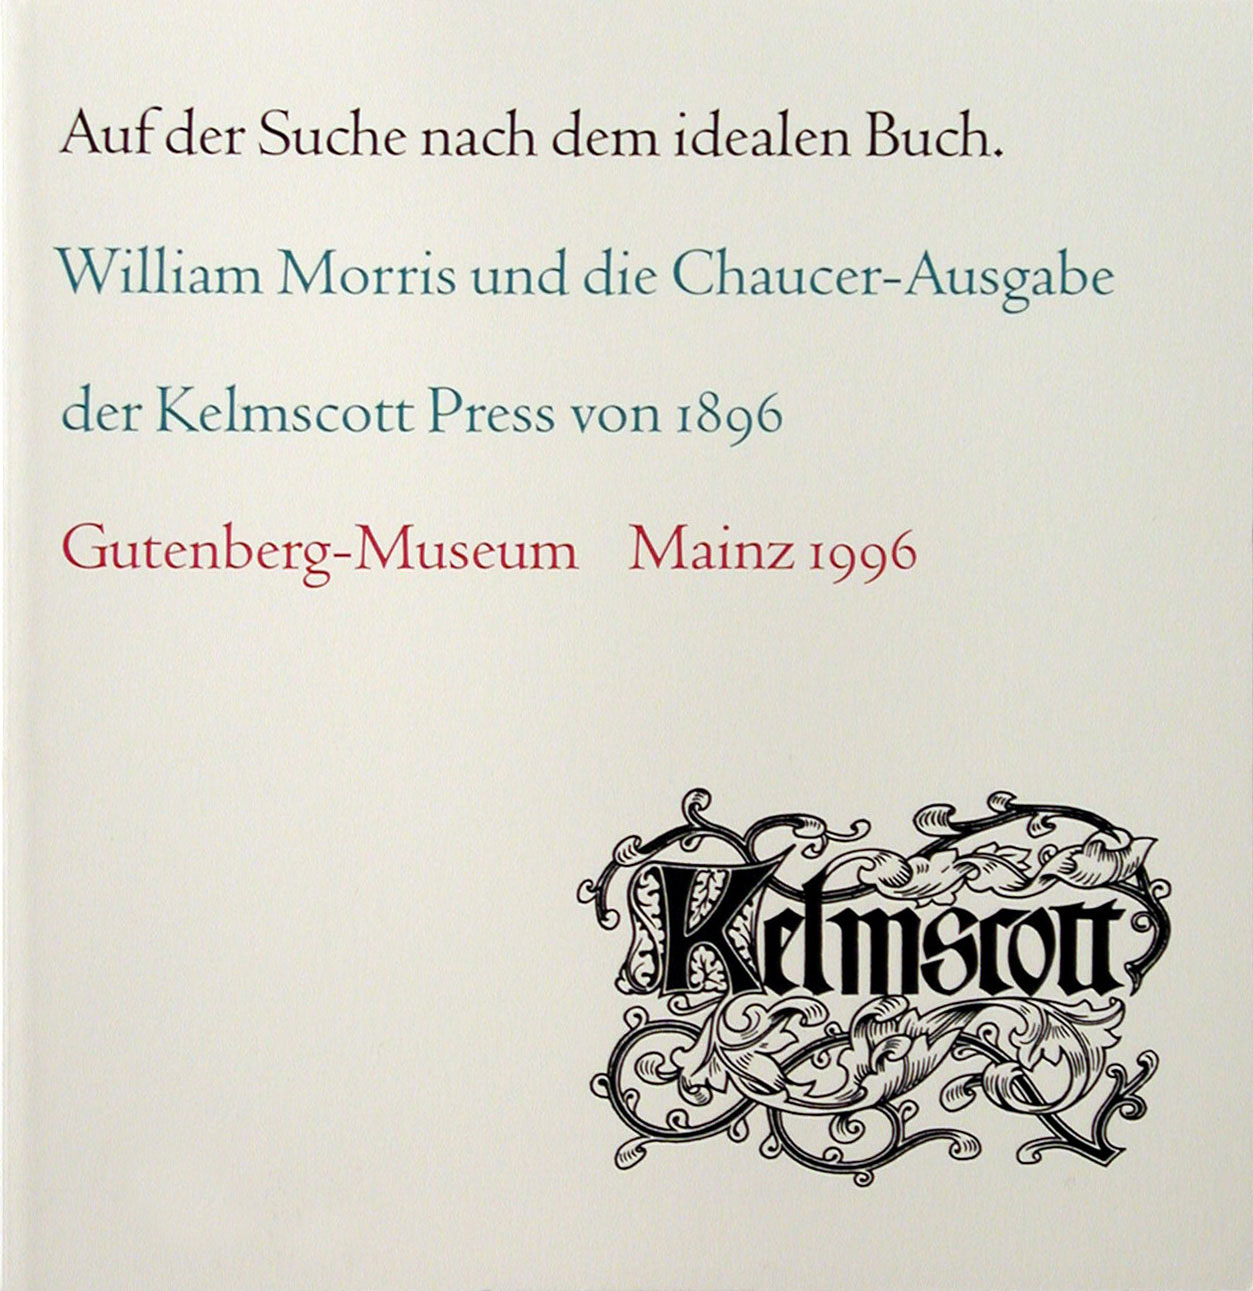 Auf der Suche nach dem idealen Buch. William Morris und die Chaucer-Ausgabe der Kelmscott Press